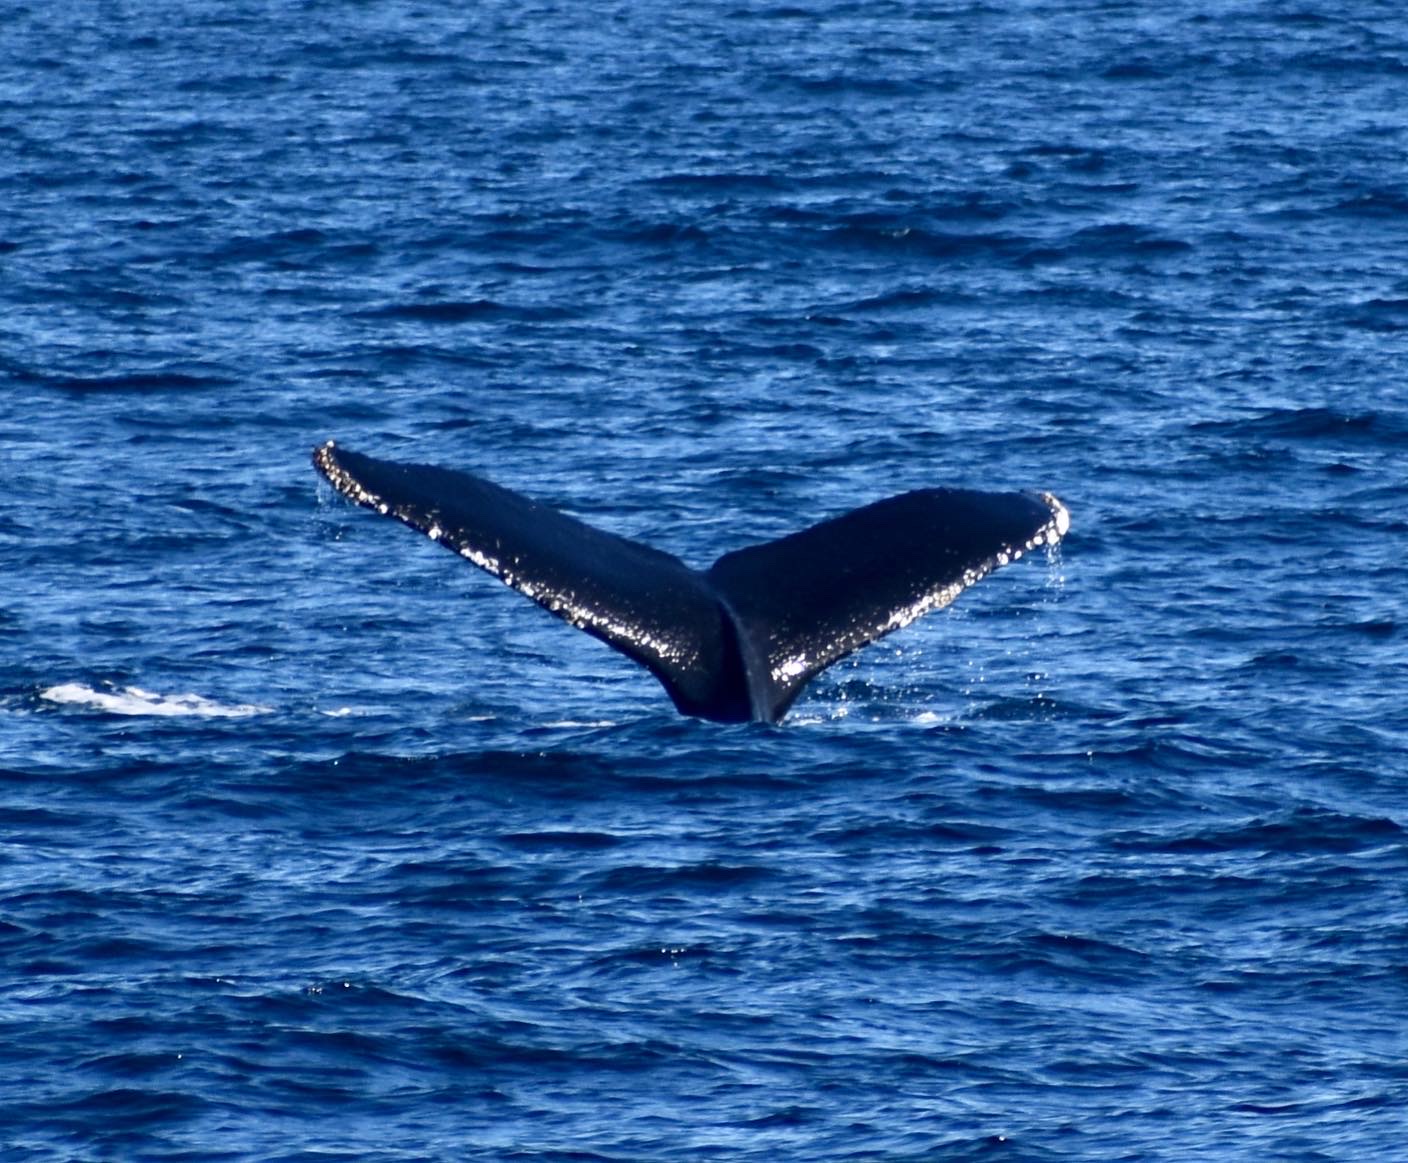 Humpback Whale, January 2, 2022